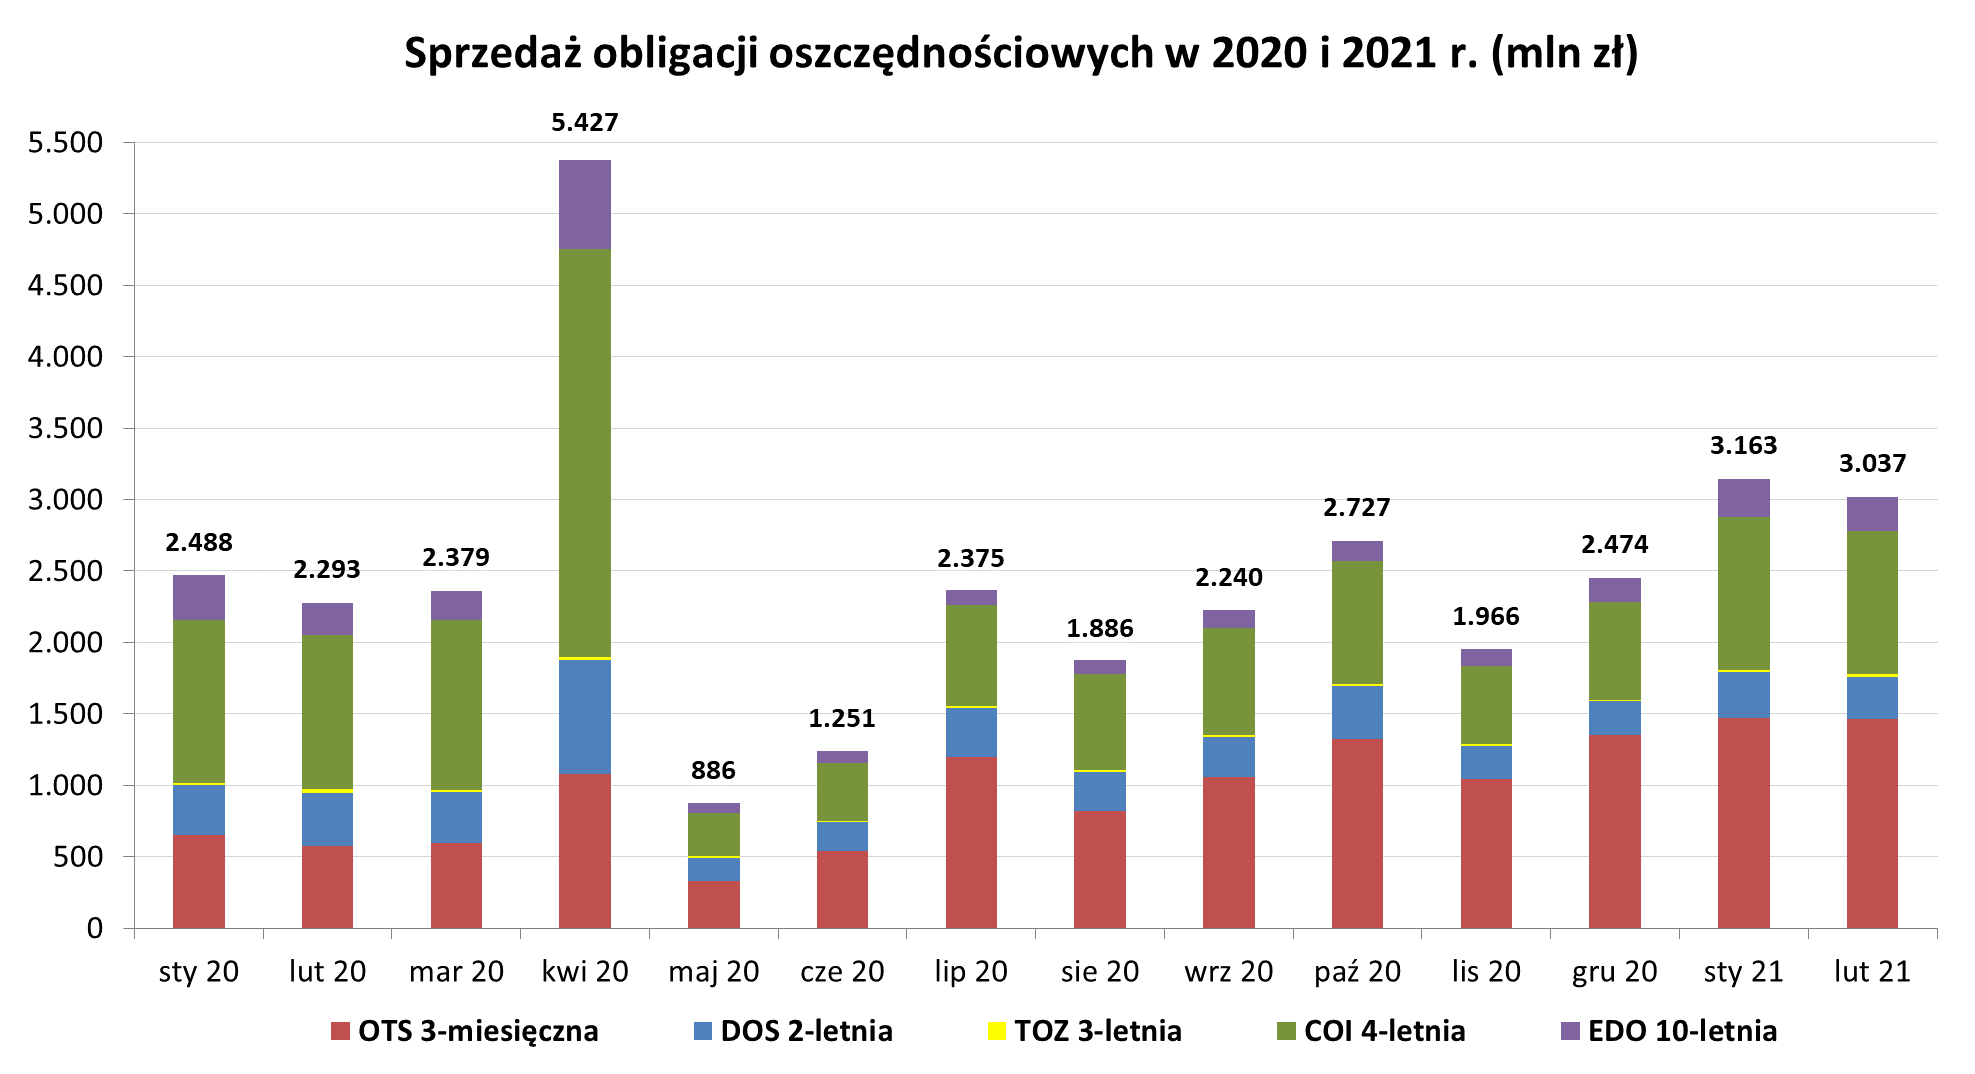 Graf słupkowy przedstawiający sprzedaż obligacji oszczędnościowych w 2020 r. i 2021 r. w mln zł